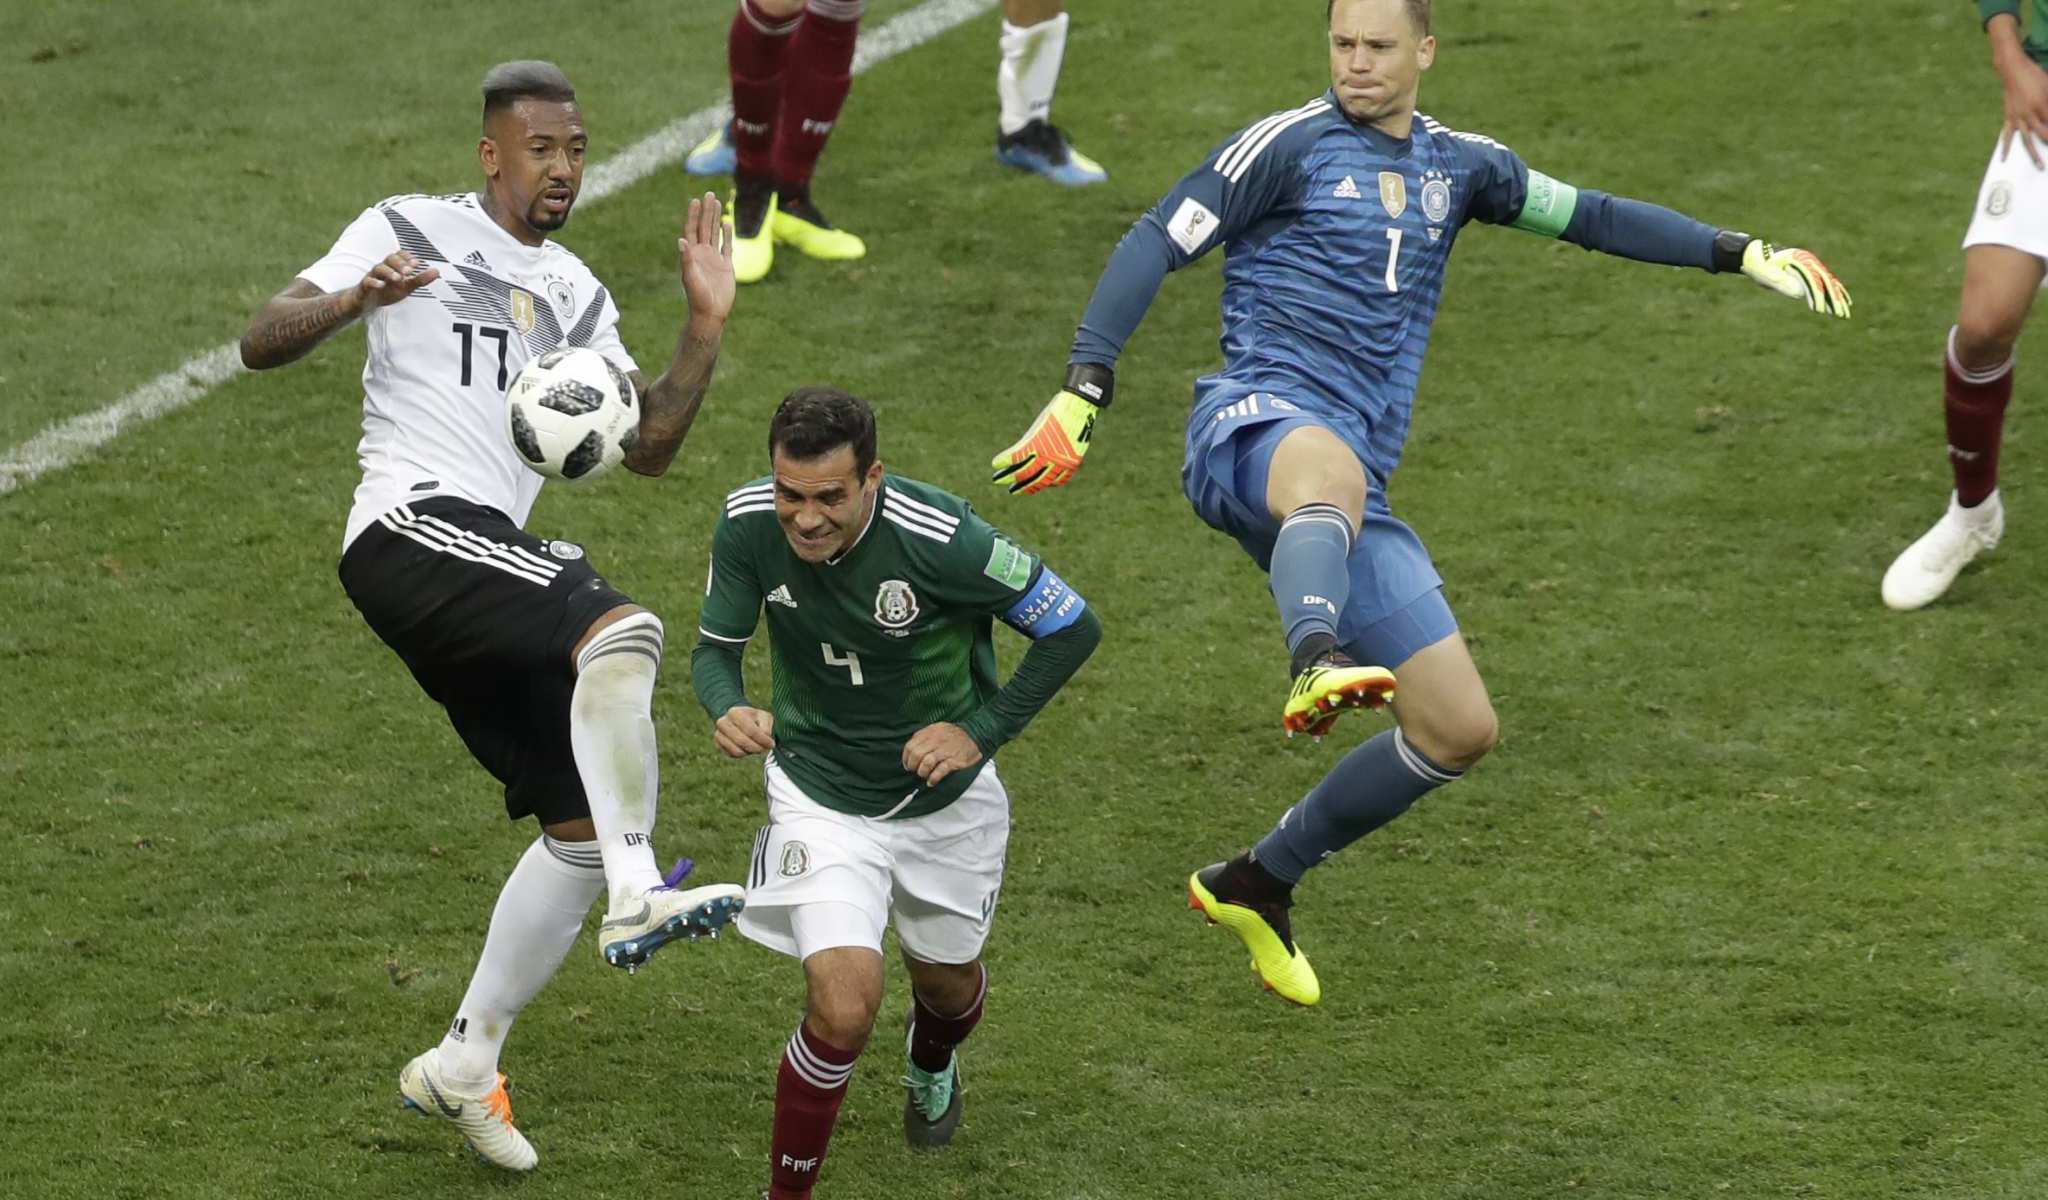 Alemania vs México, el partido más visto en Rusia 2018 José Cárdenas